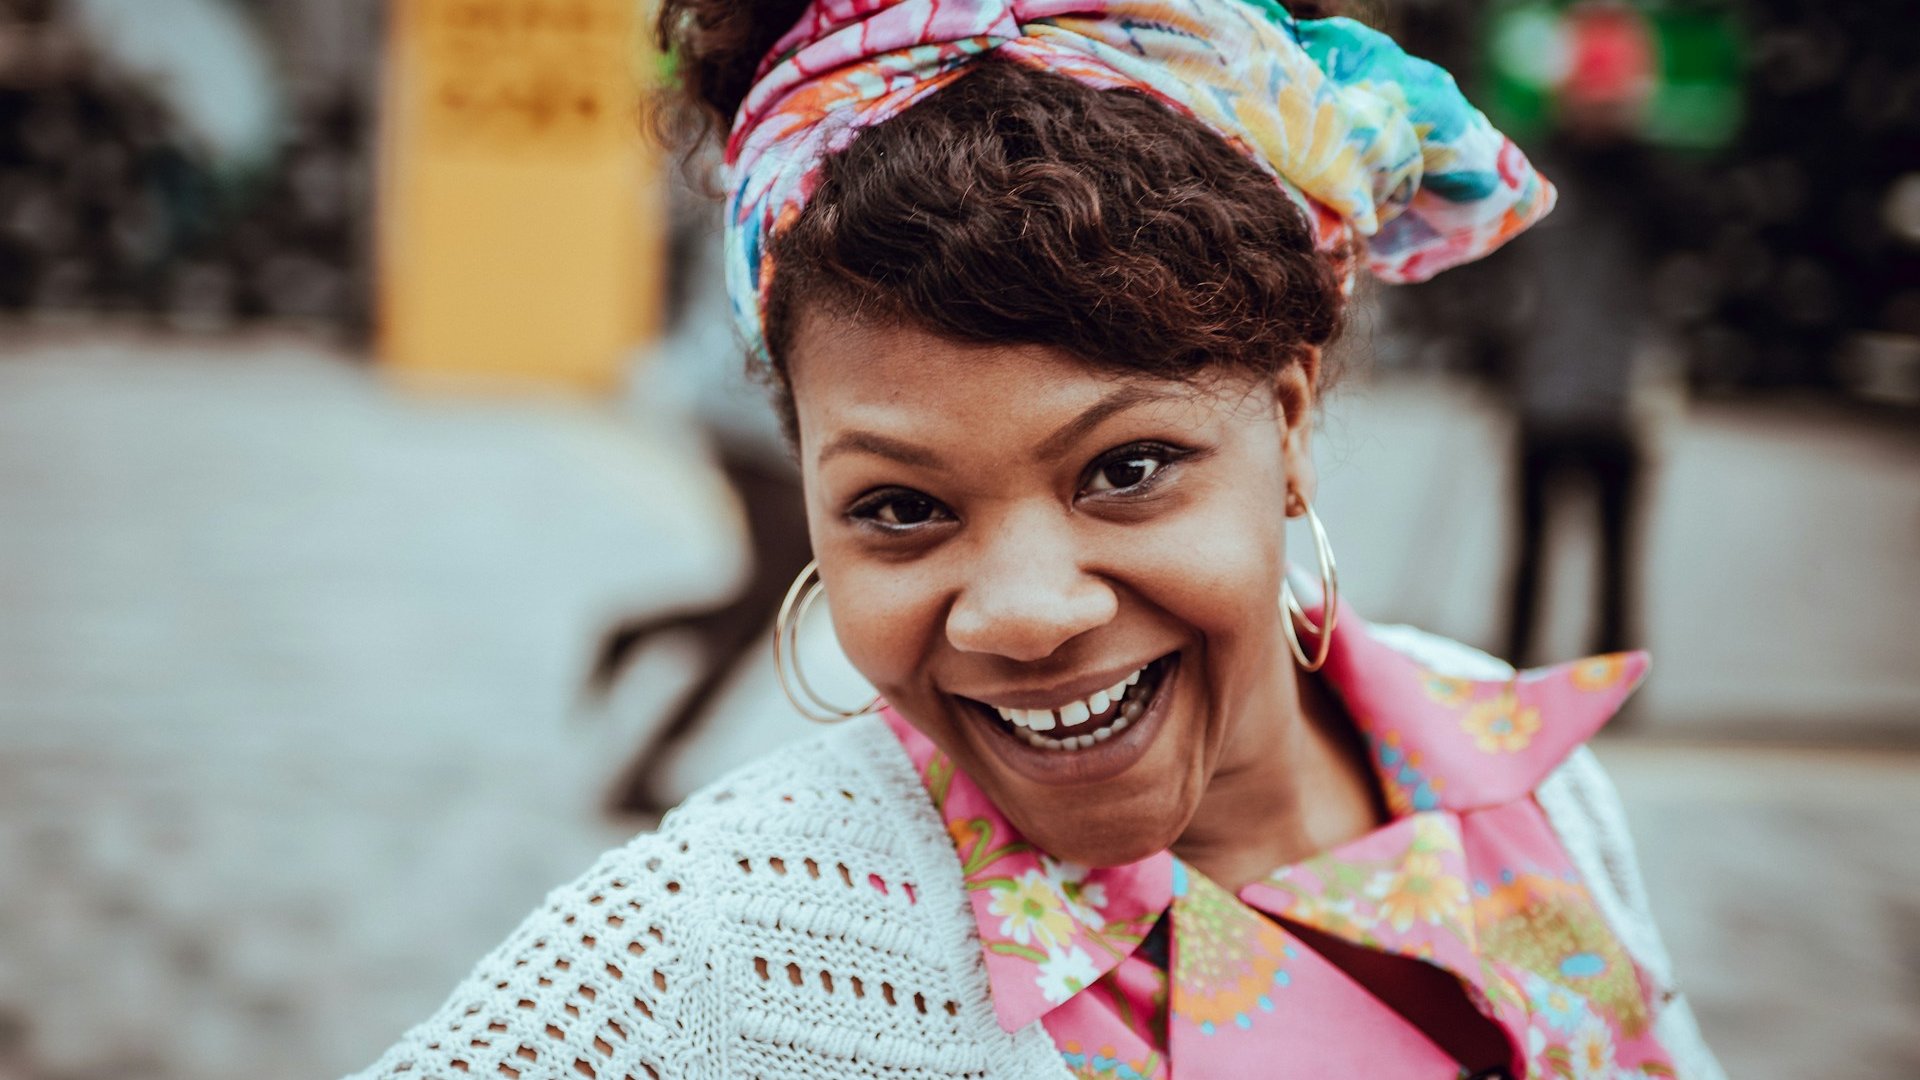 Mulher negra sorridente na rua, com roupas coloridas.